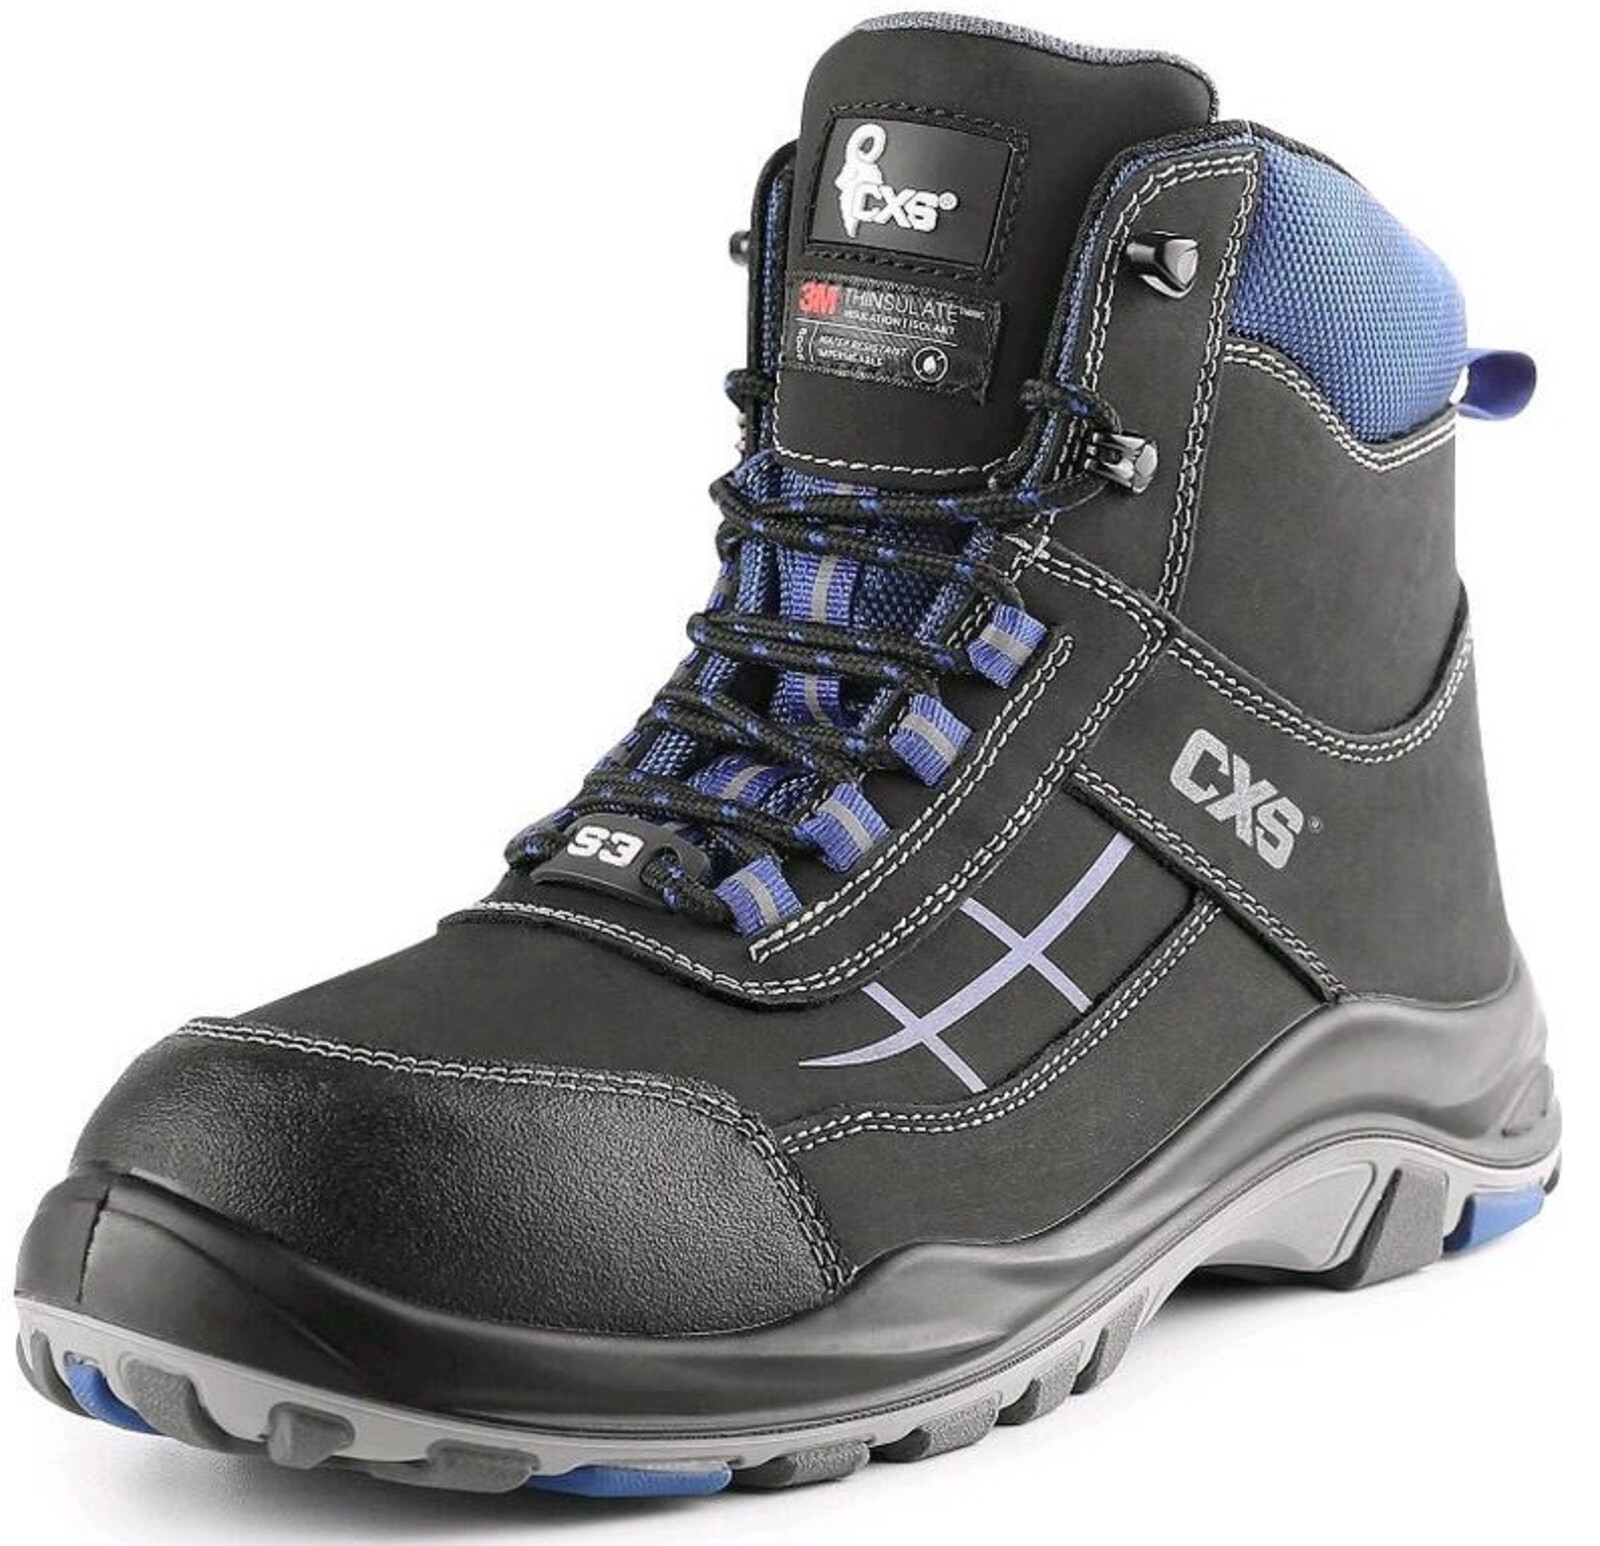 Zateplená bezpečnostná členková obuv CXS Dog Malamute S3 CI SRC - veľkosť: 44, farba: čierna/modrá